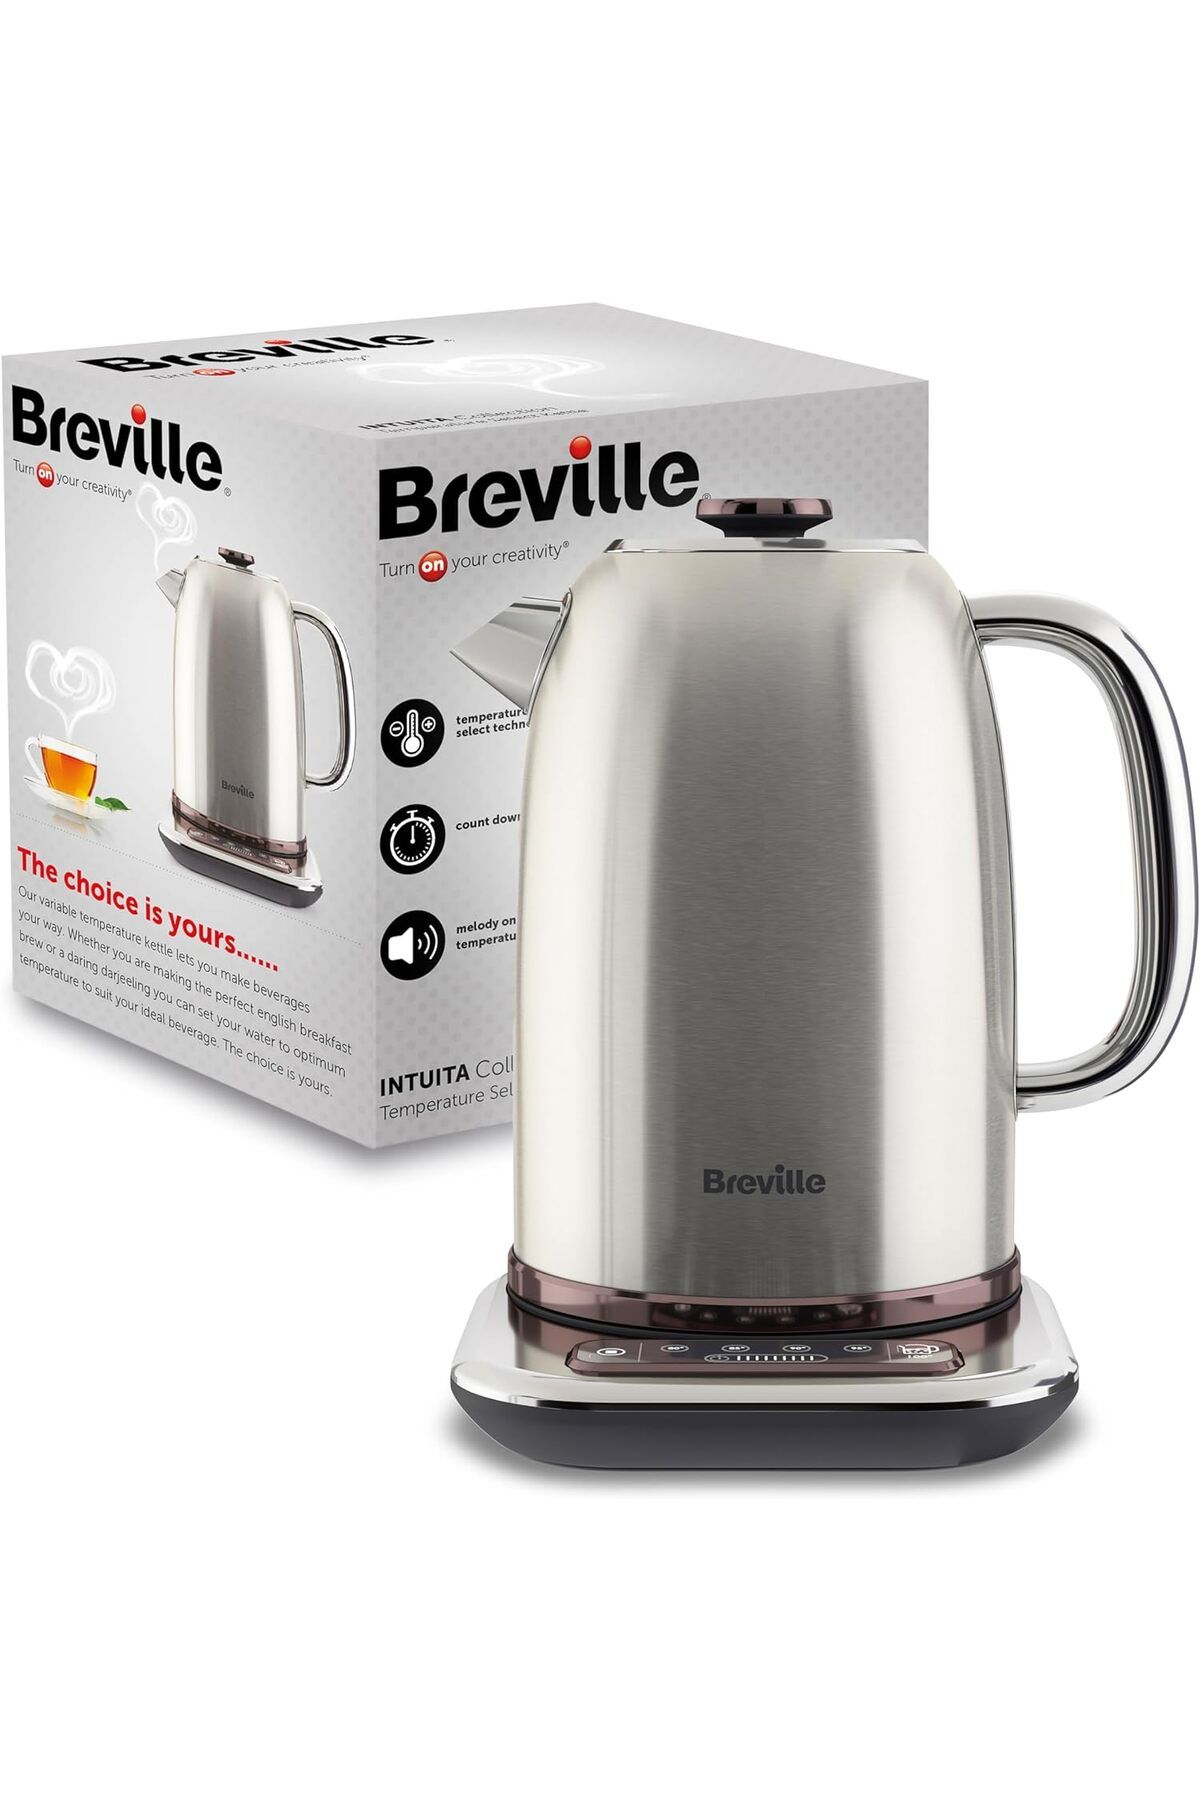 Breville Akıllı Kontrollerle Hızlı Kaynatma, 1.7L Kapasiteli Çelik Su Isıtıcısı Değişken Sıcaklık Kontrolü!